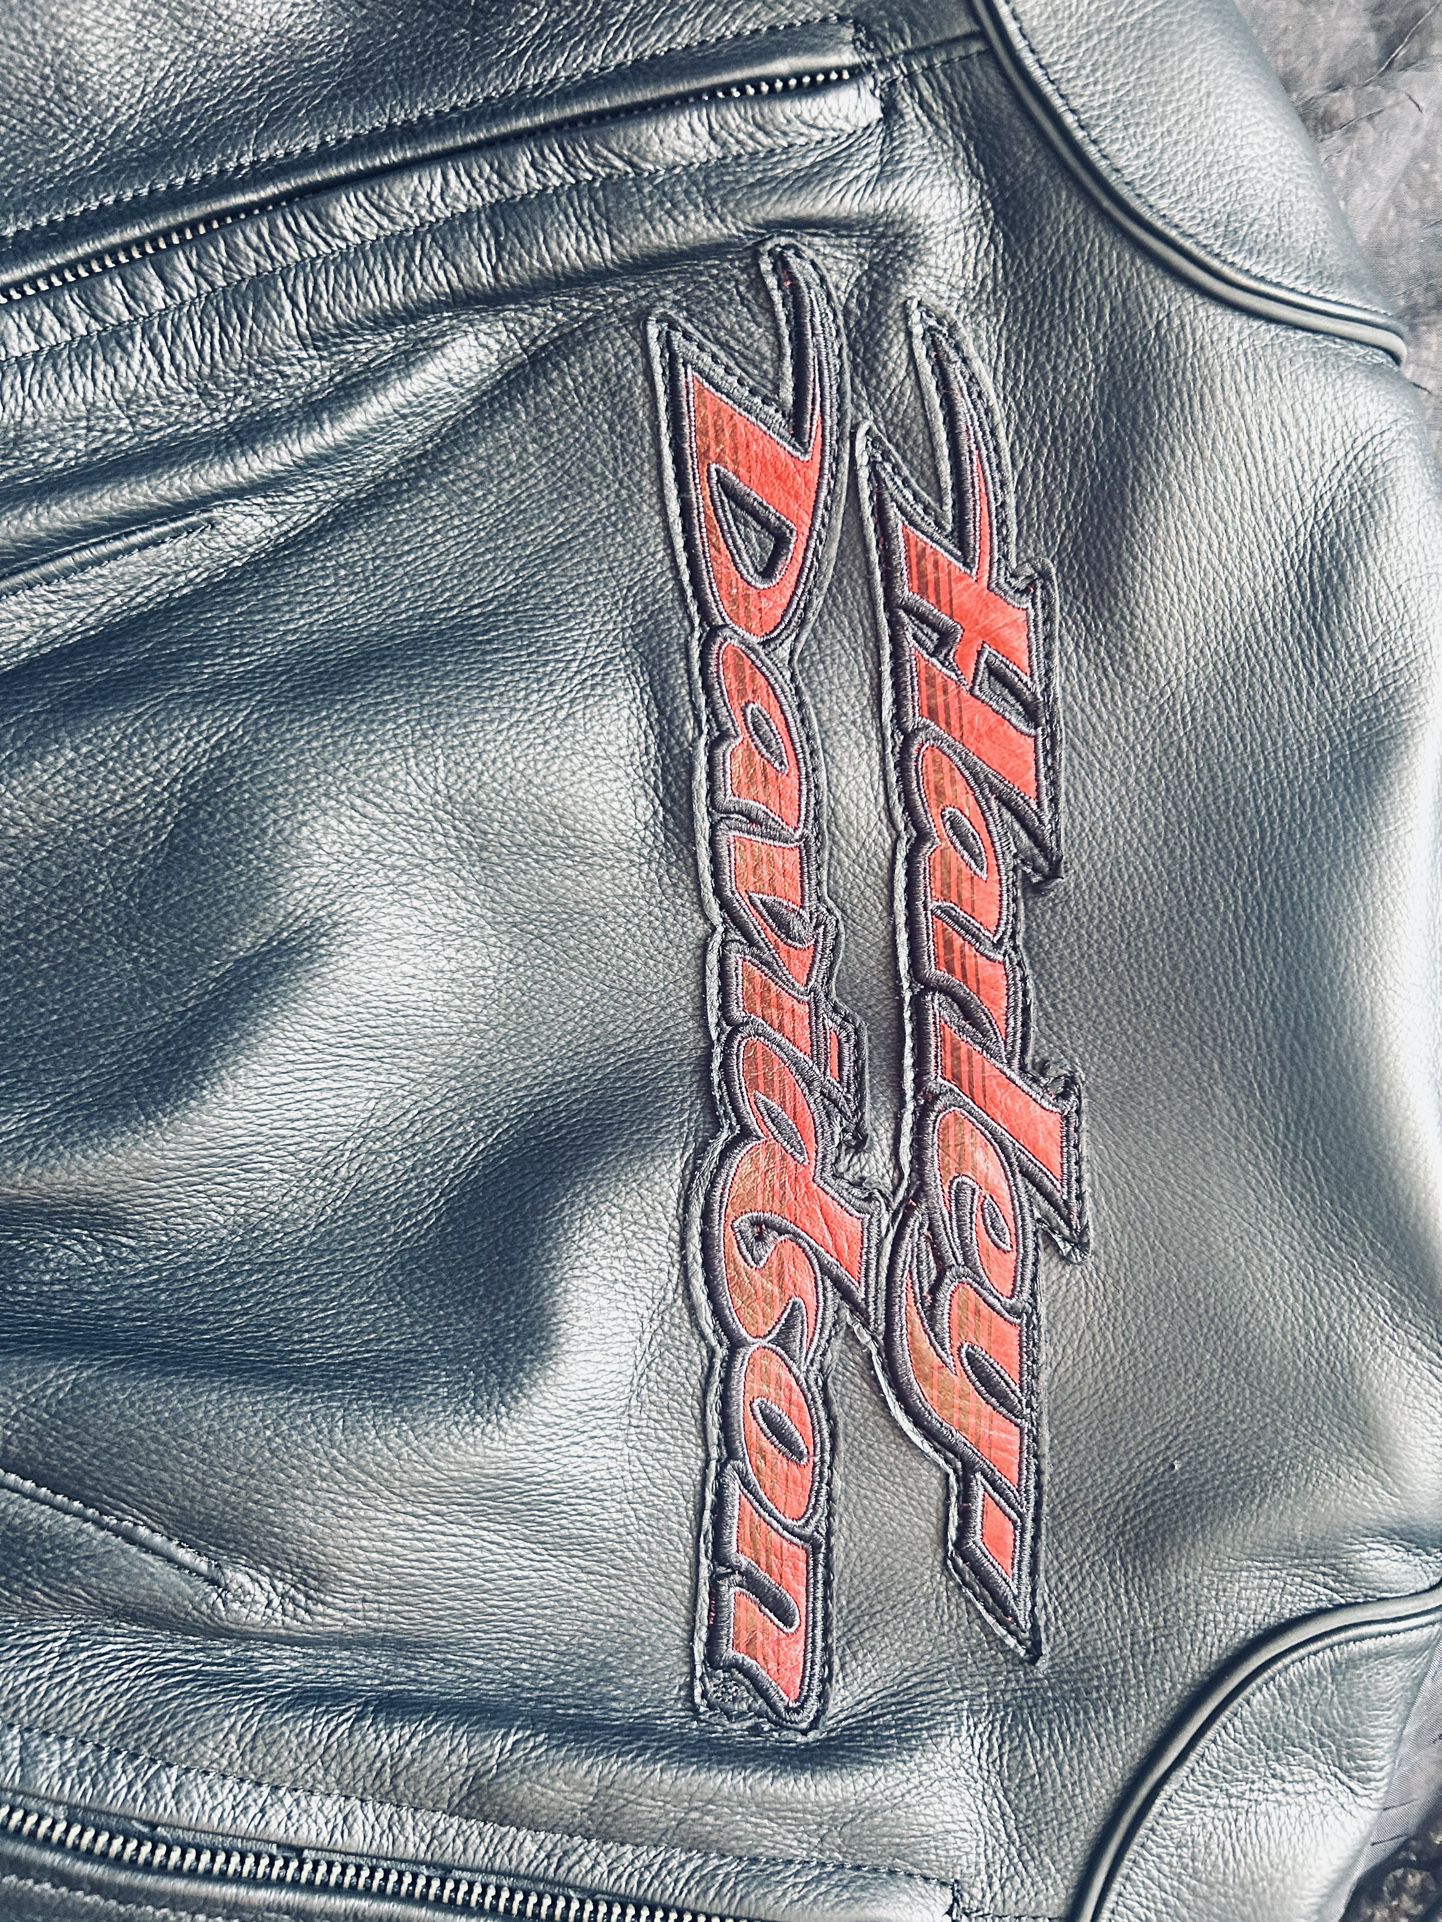 Harley Davidson leather jacket with under vest